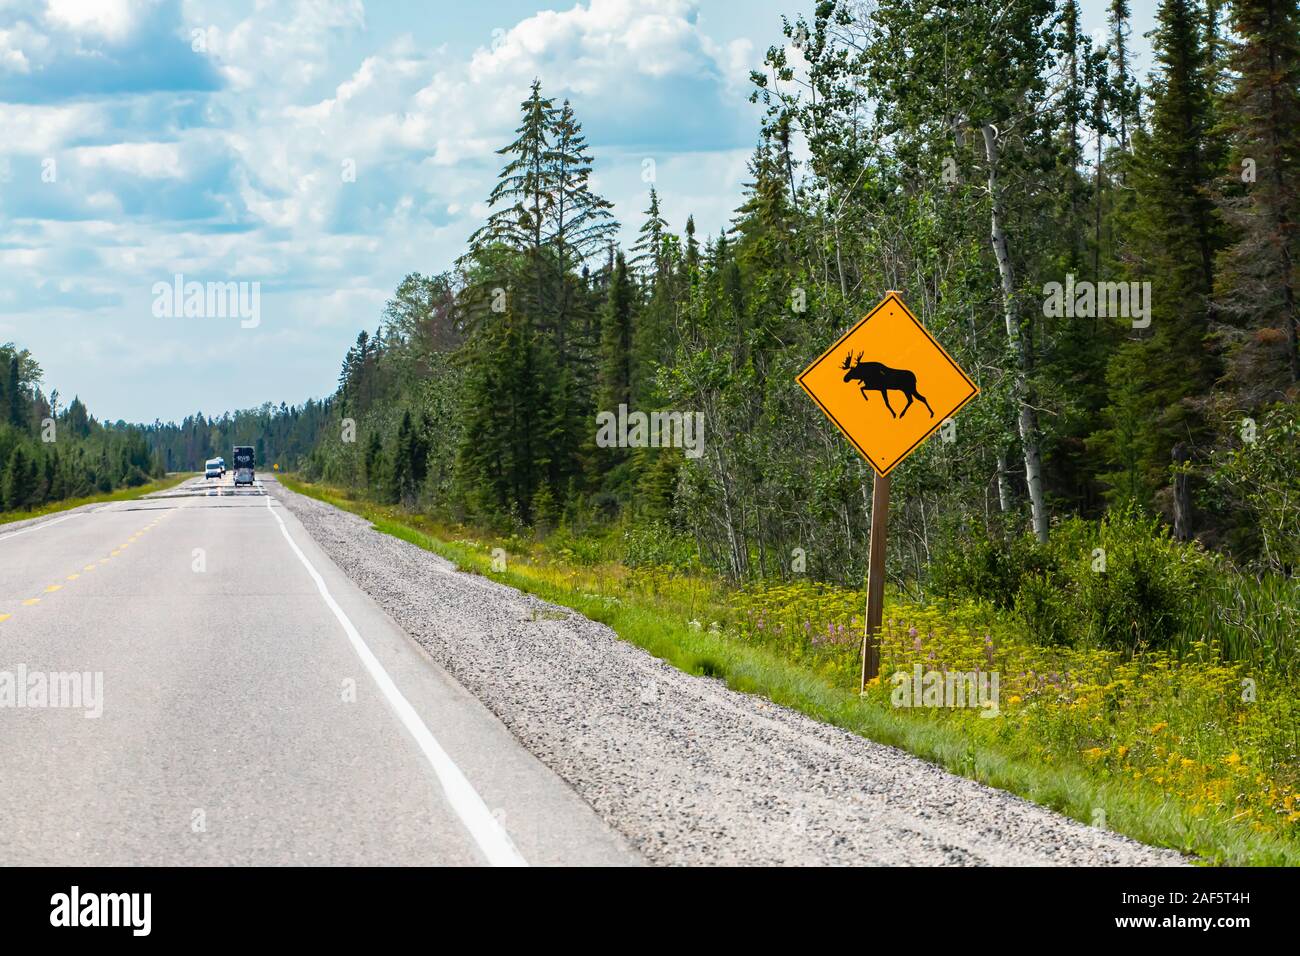 Avertissement de moose crossing the road sign, forêt de pins sur le bord des routes, les véhicules sur les routes rurales au cours d'une journée ensoleillée Banque D'Images